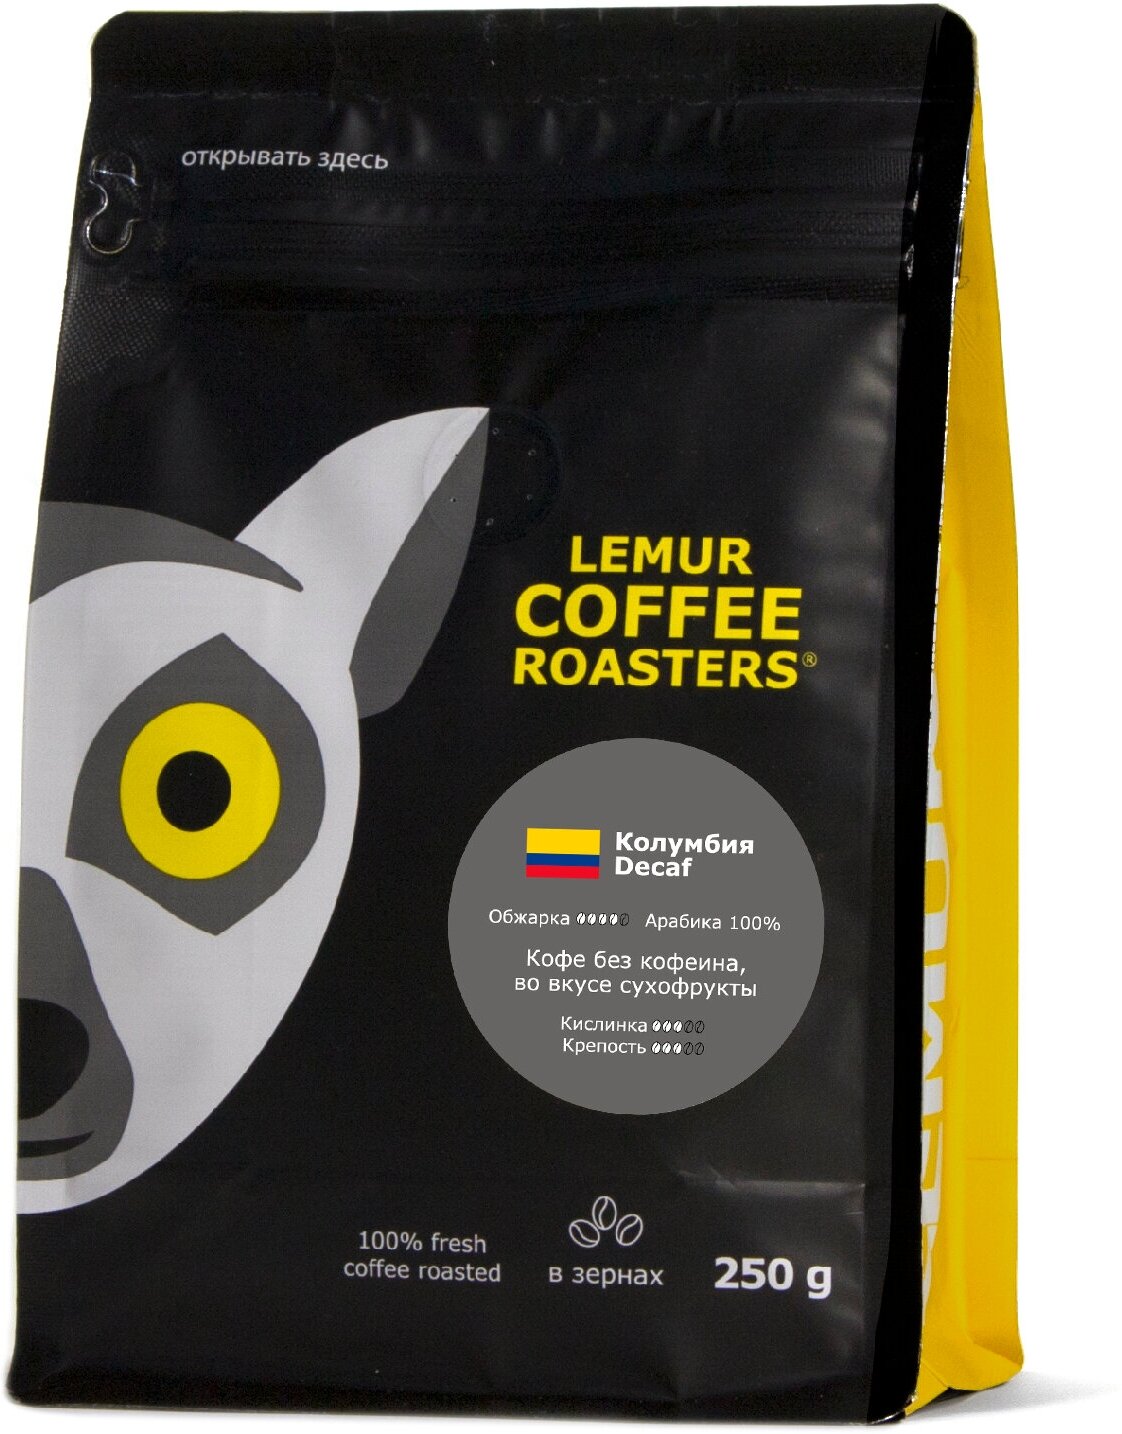 Свежеобжаренный кофе в зернах Колумбия Decaf Эспрессо Lemur Coffee Roasters, 250 г - фотография № 1